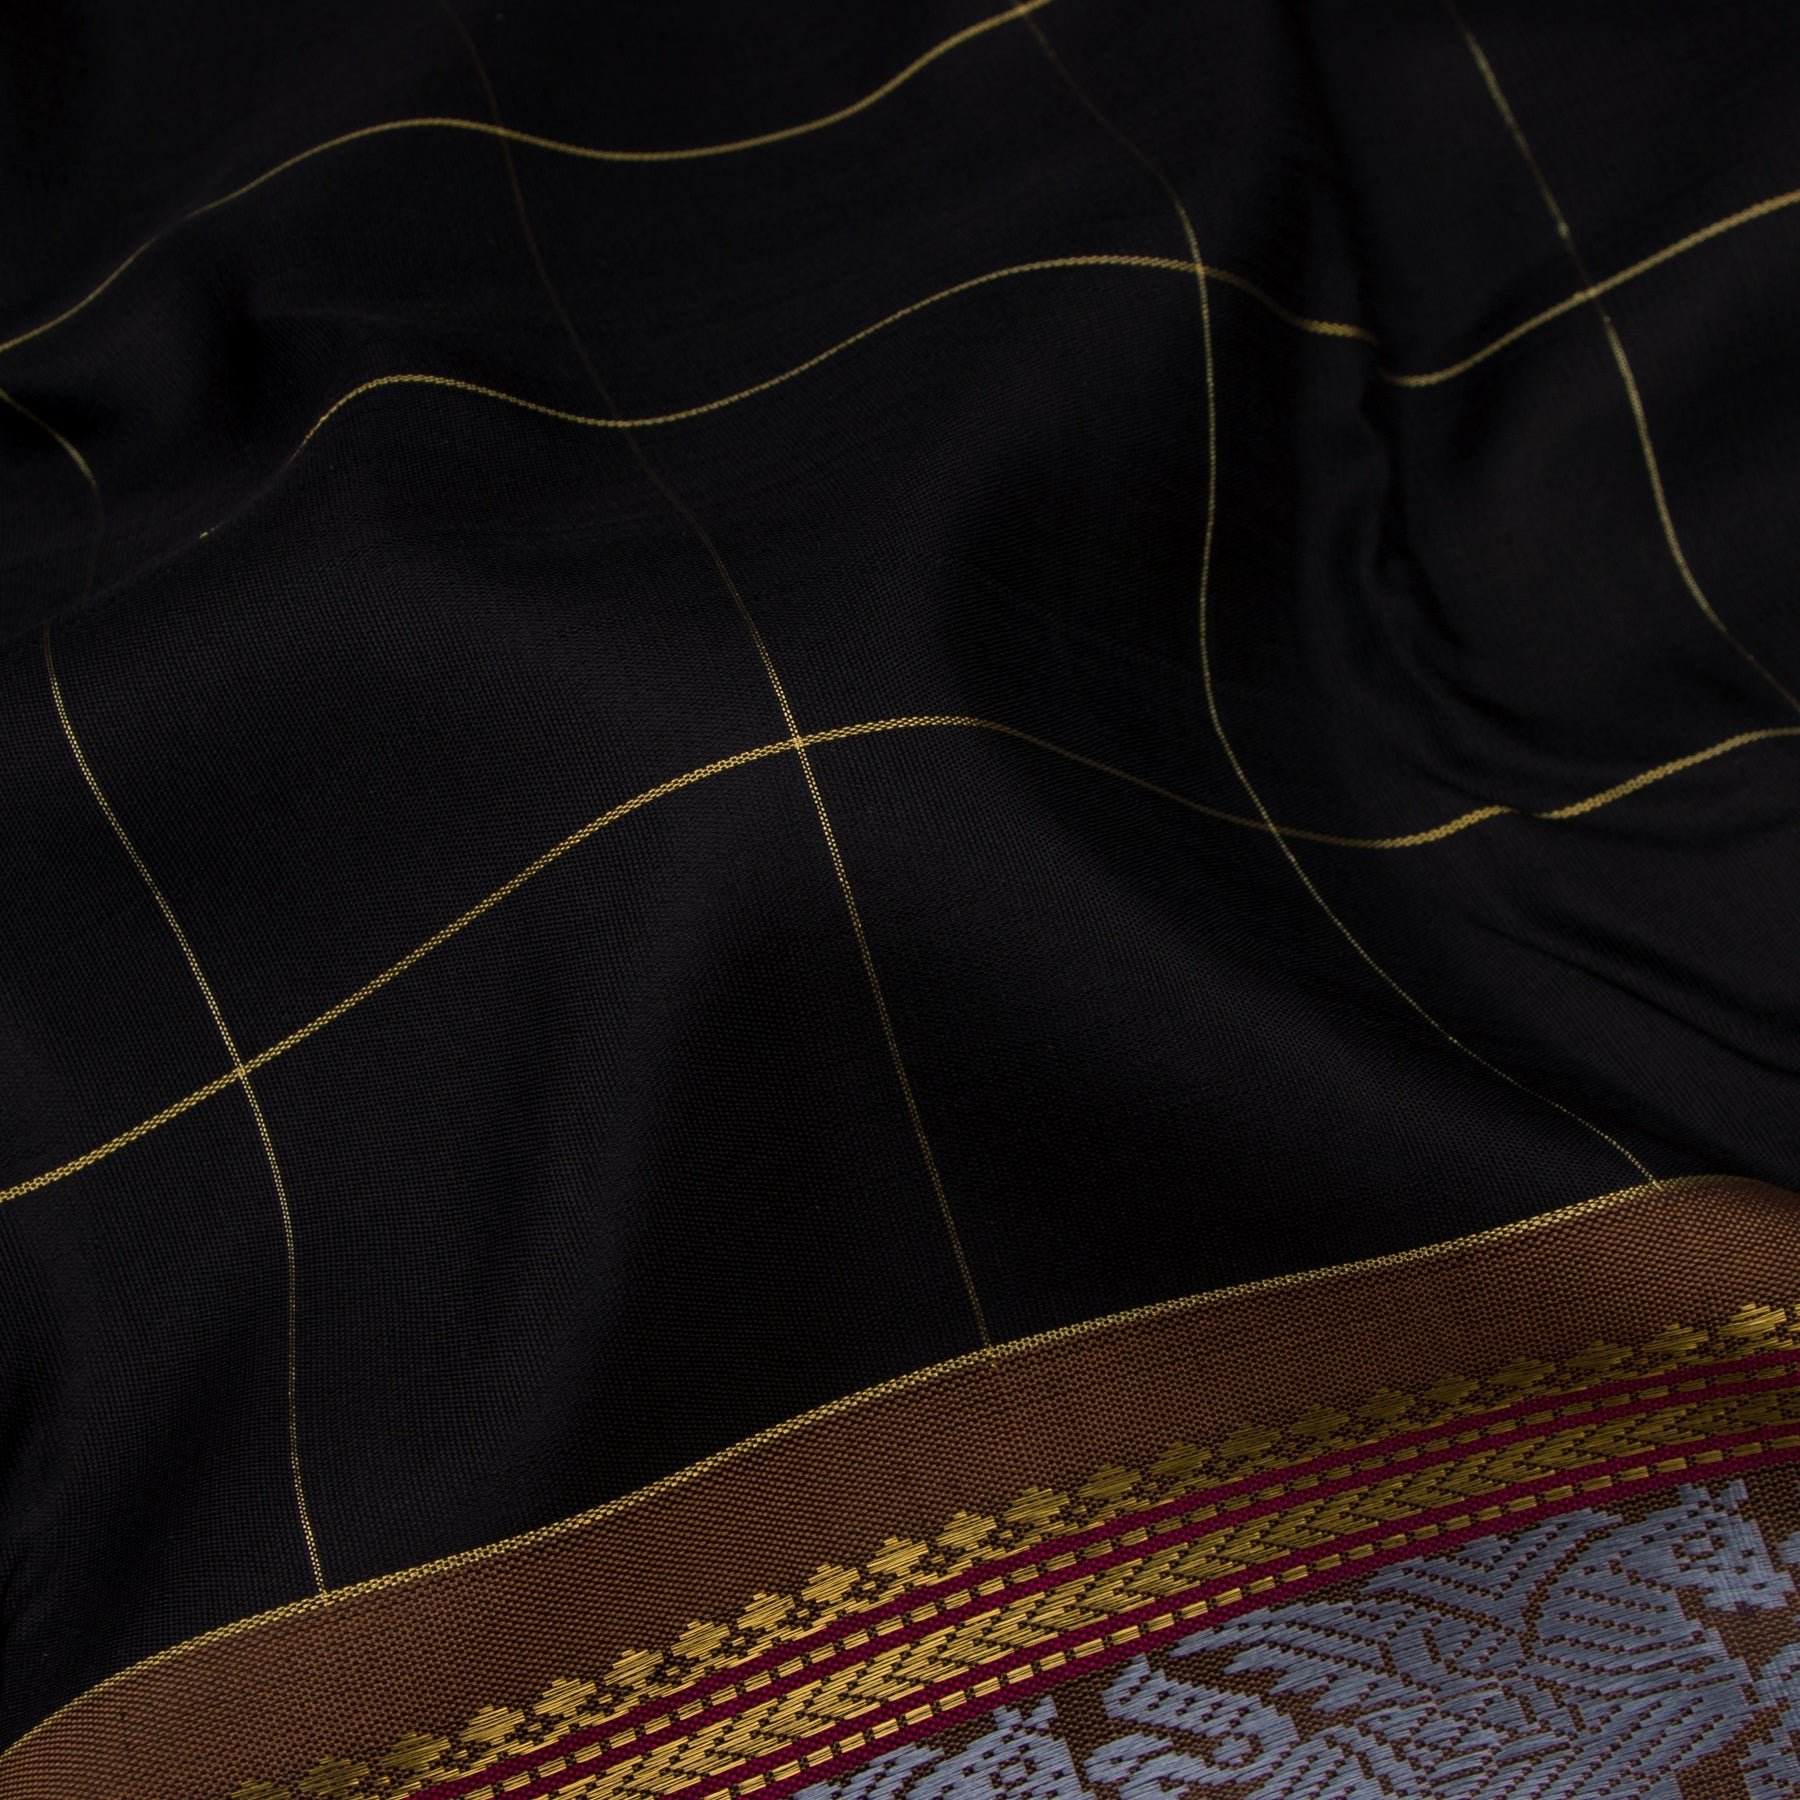 Kanakavalli Kanjivaram Silk Sari 21-040-HS001-02283 - Fabric View